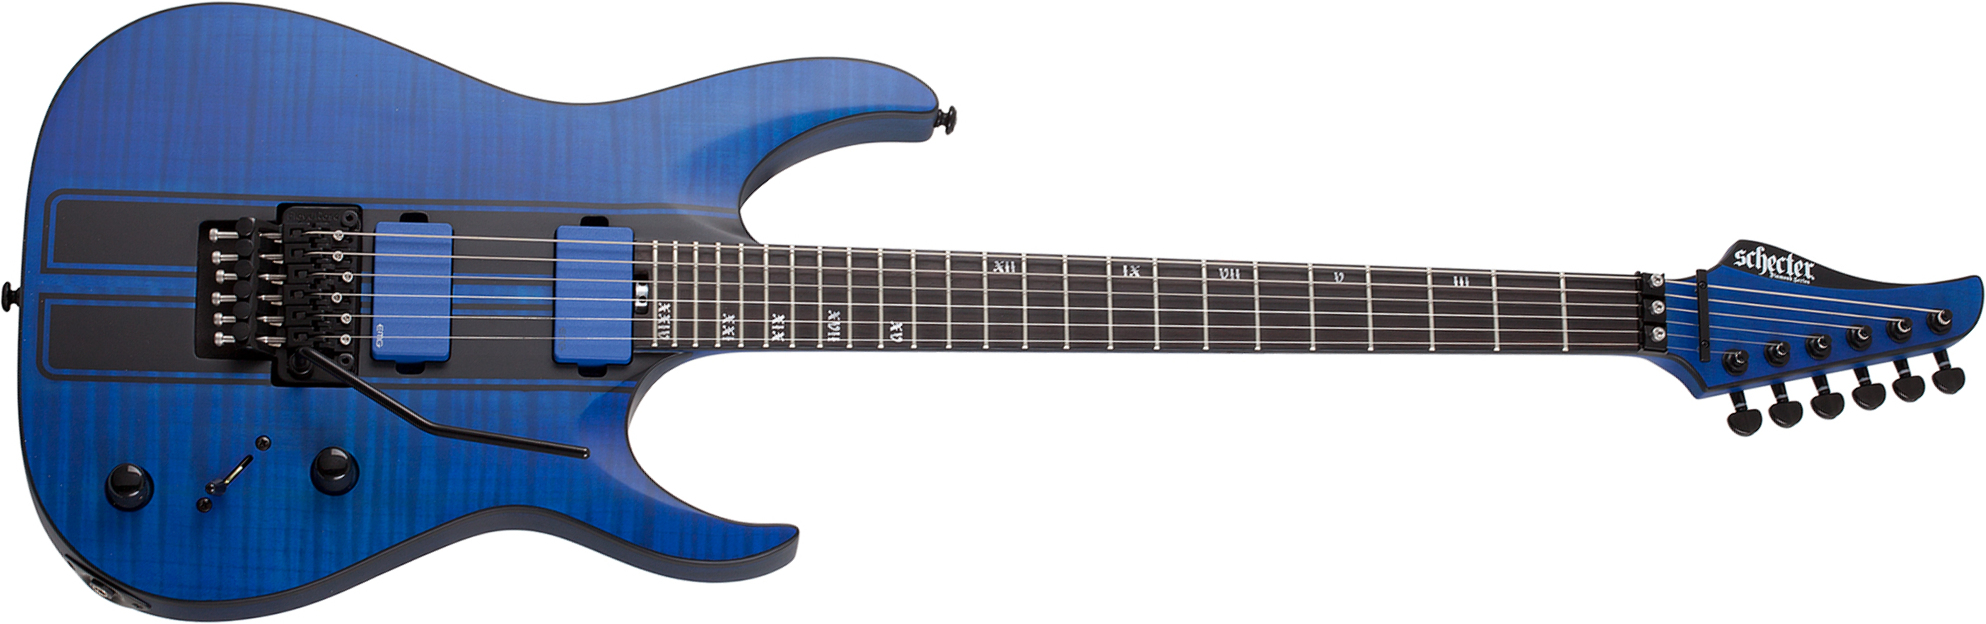 Schecter Banshee Gt Fr 2h Emg Eb - Satin Trans Blue - Guitare Électrique Forme Str - Main picture